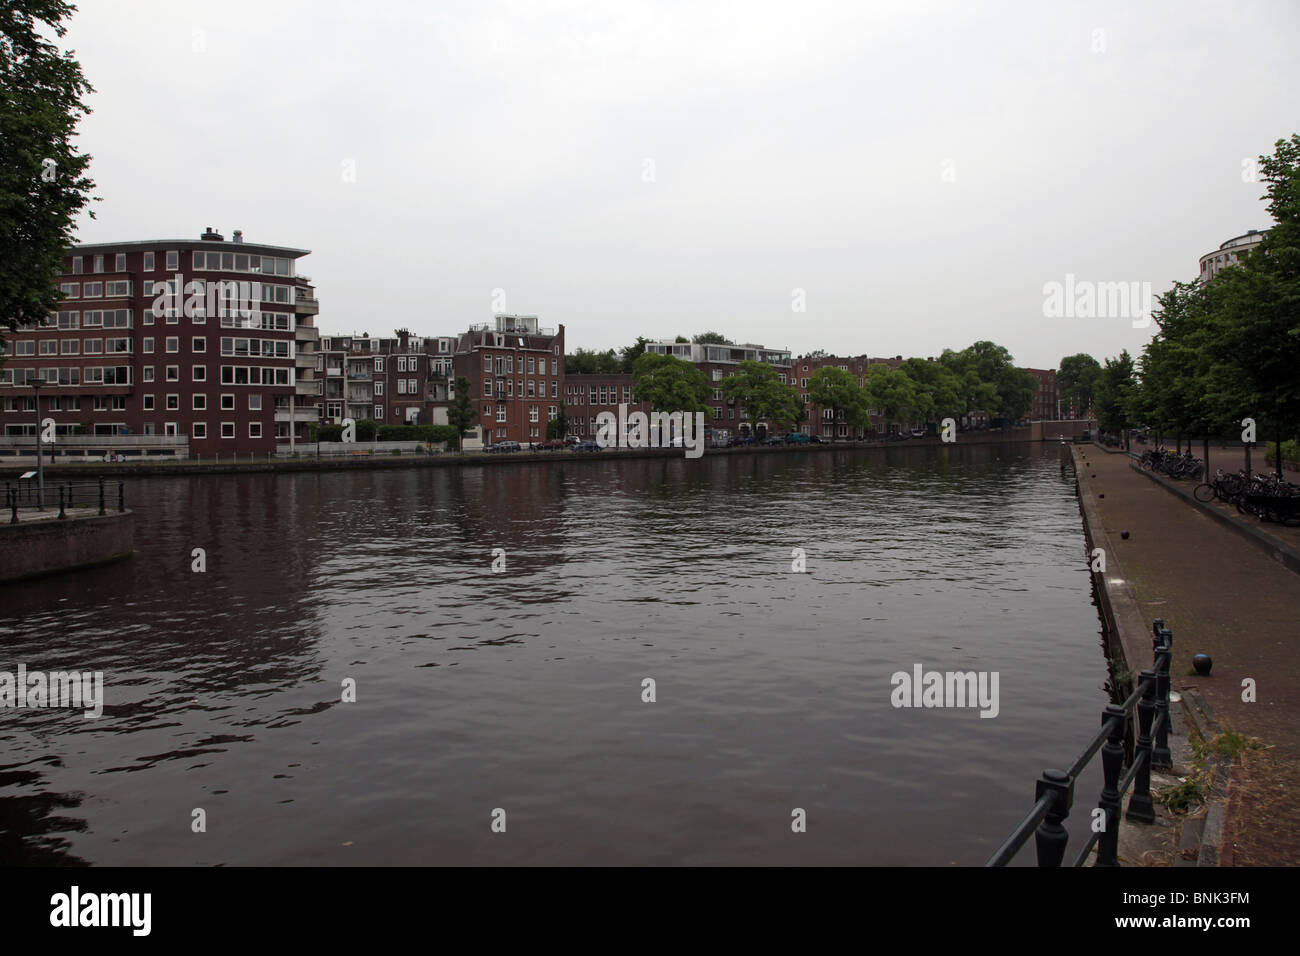 Blick auf die Gebäude am Canalside-Ufer der Jacob Catskade, Amsterdam Stockfoto